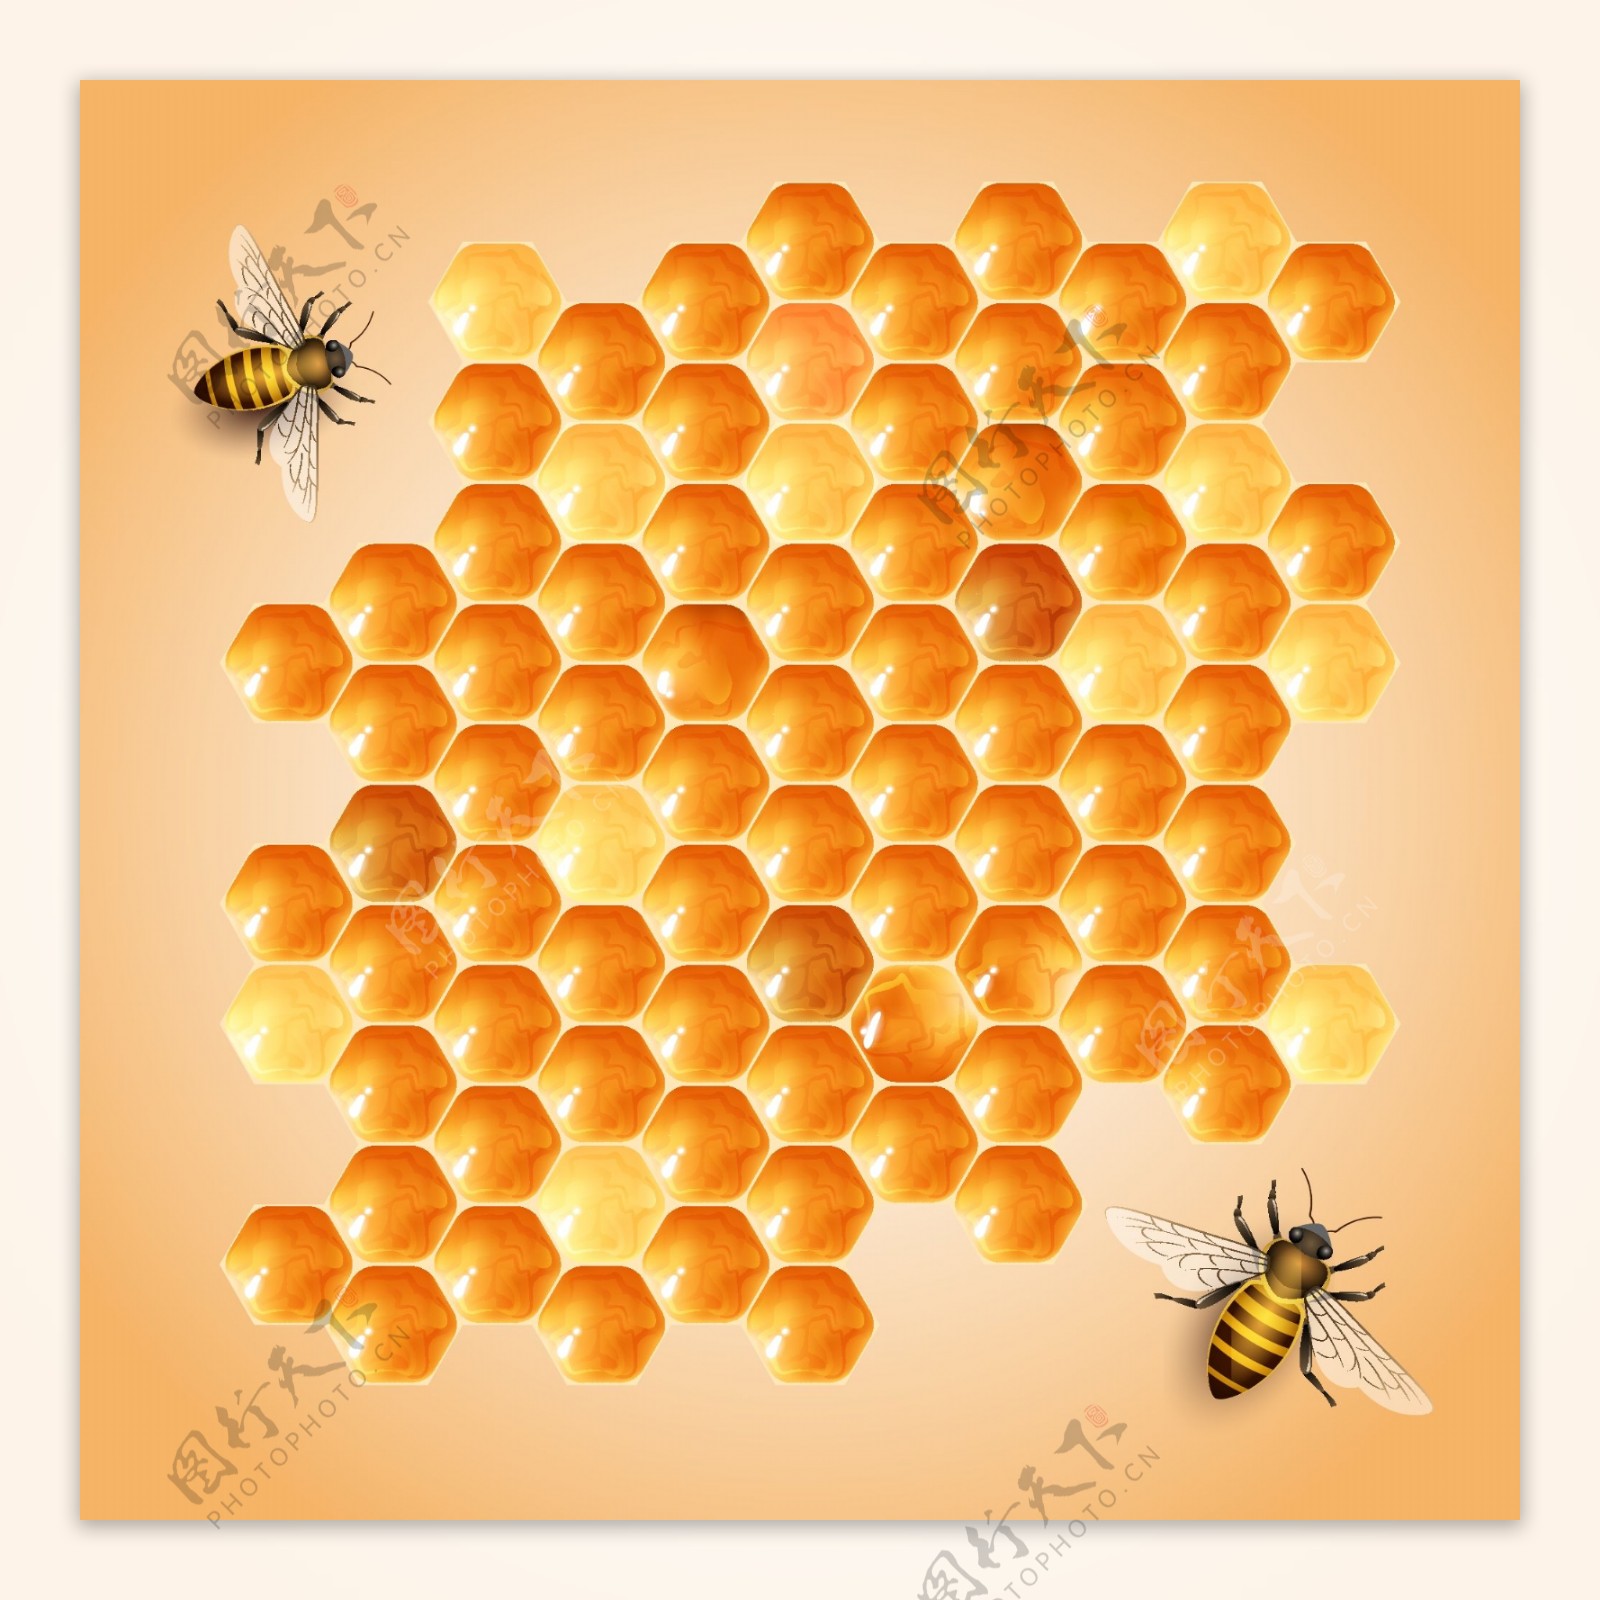 蜂蜜和峰巢